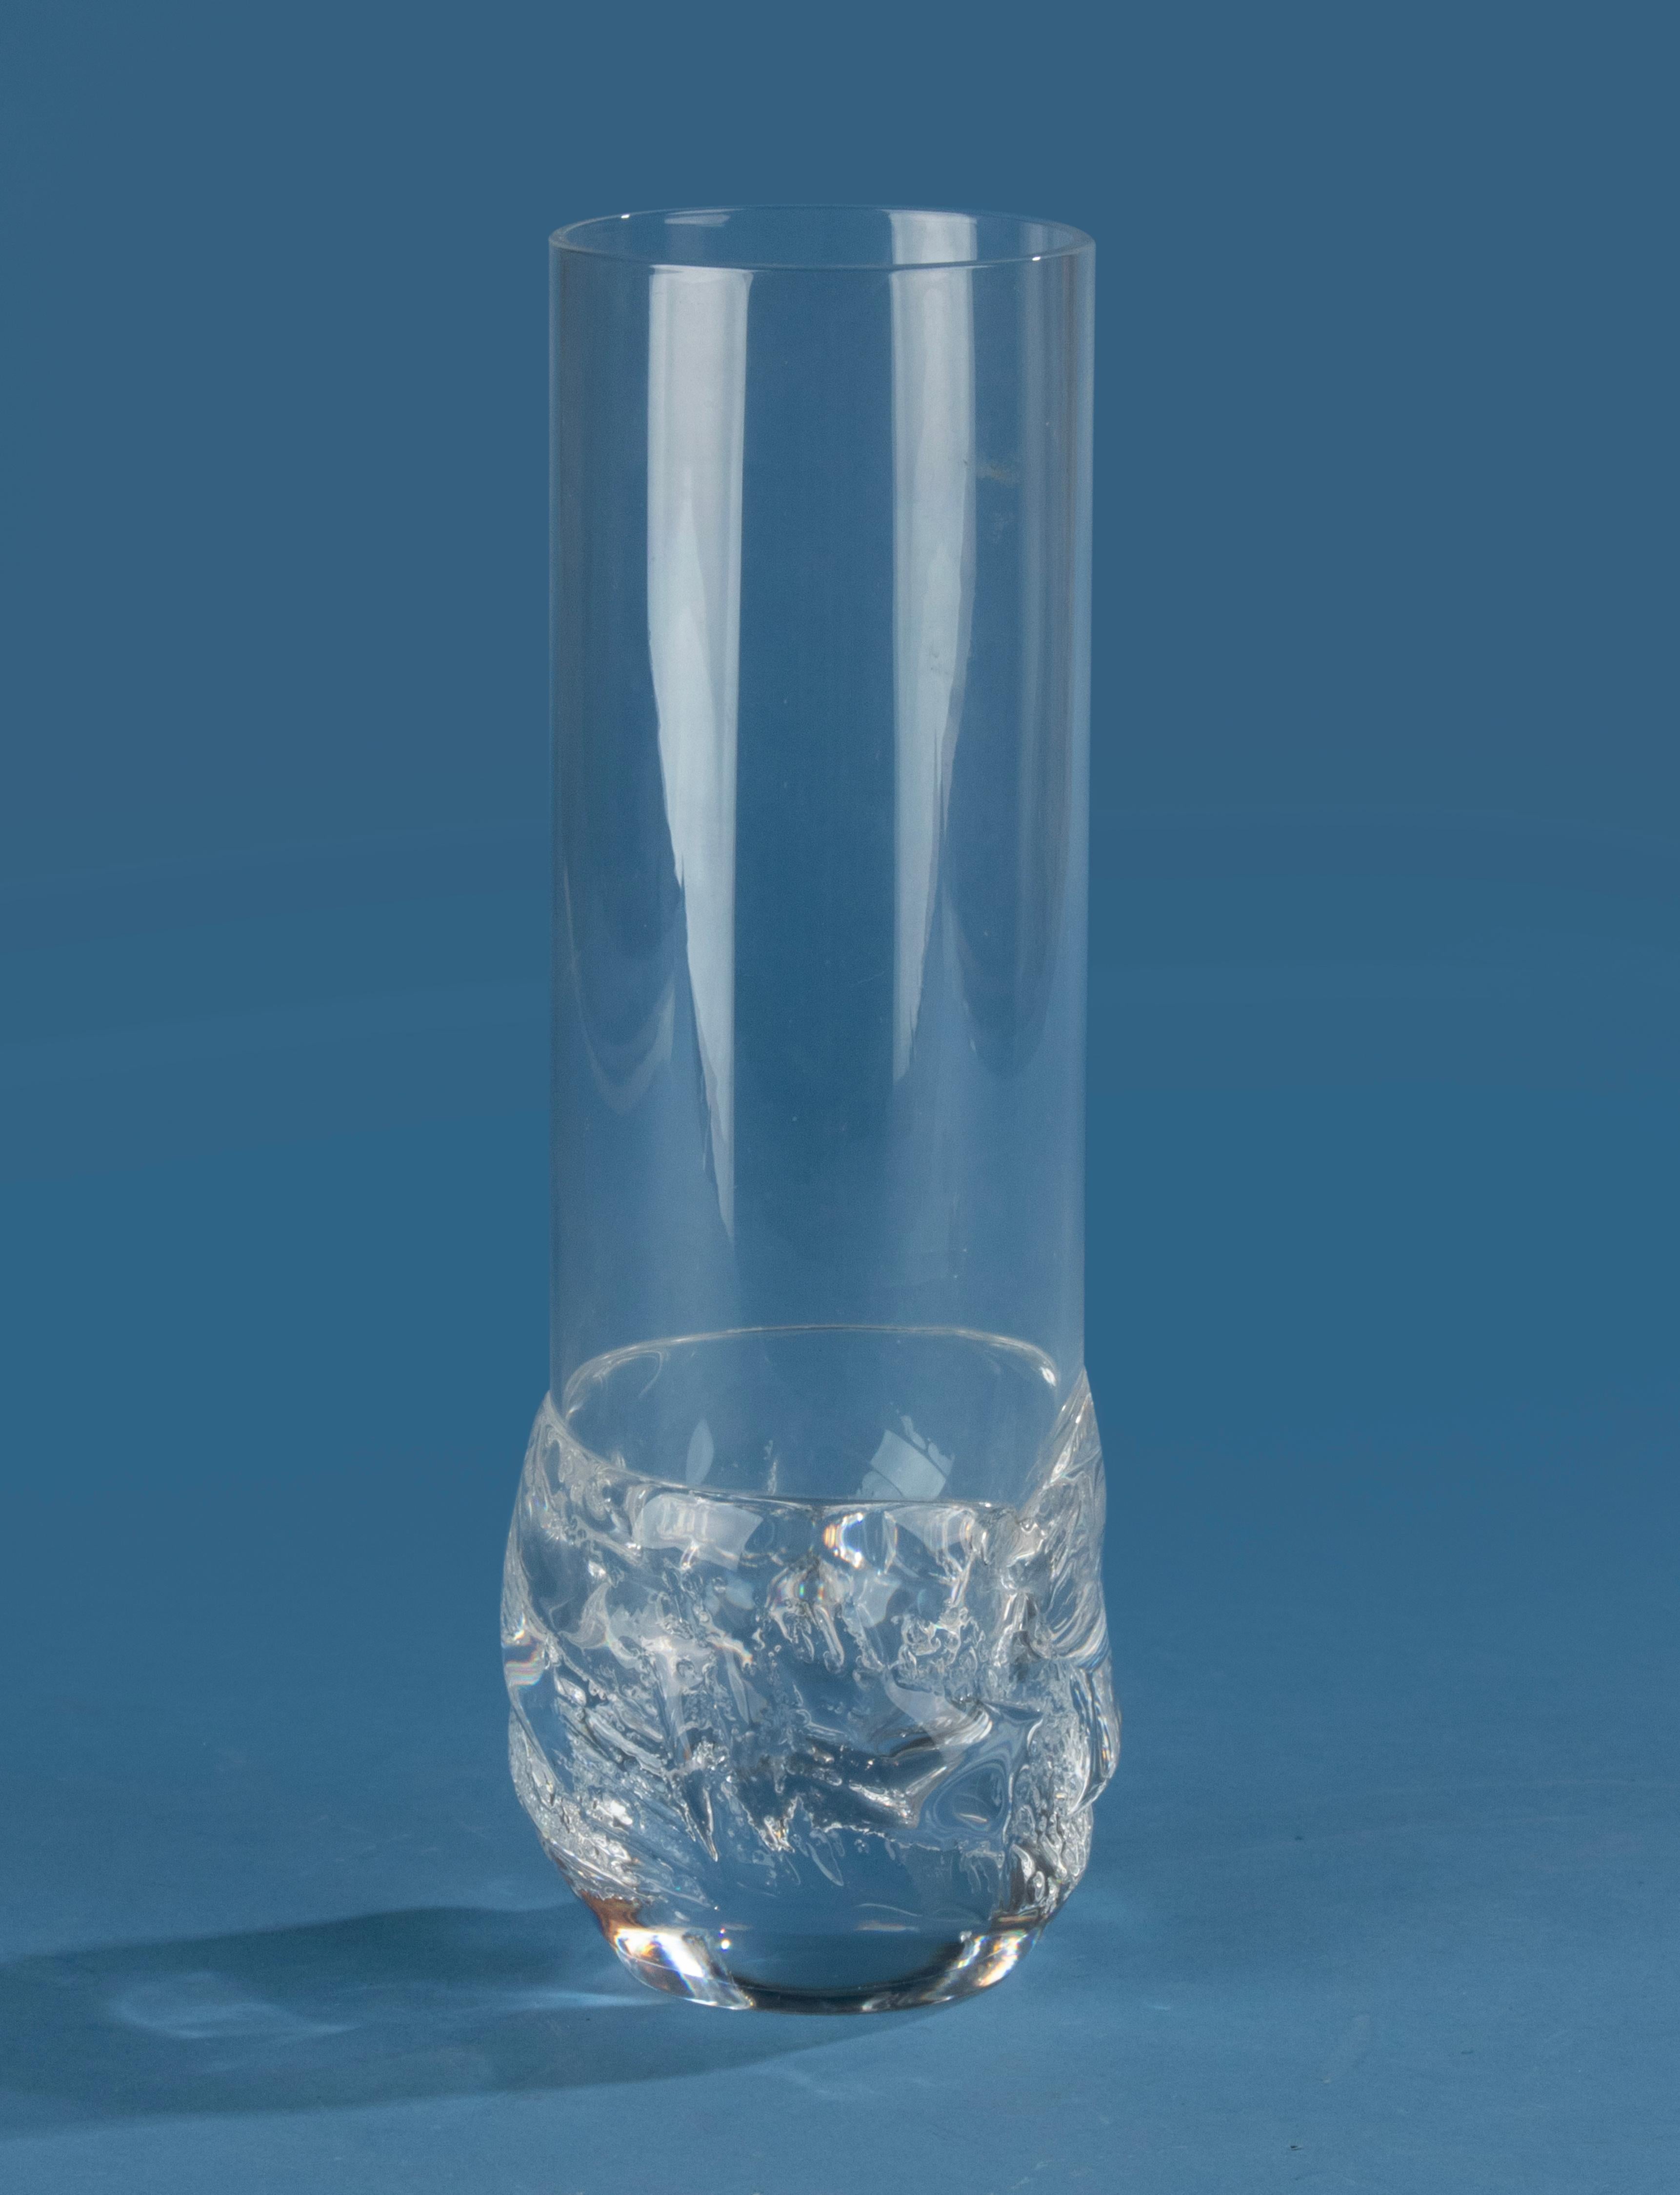 Un beau vase en cristal clair, fabriqué par la marque française Daum. 
Le vase date d'environ 1970. 
Signé sur le côté du fond.

Le vase a une hauteur de 26 cm et un diamètre de 9 cm.
Frais d'expédition dans le monde entier 